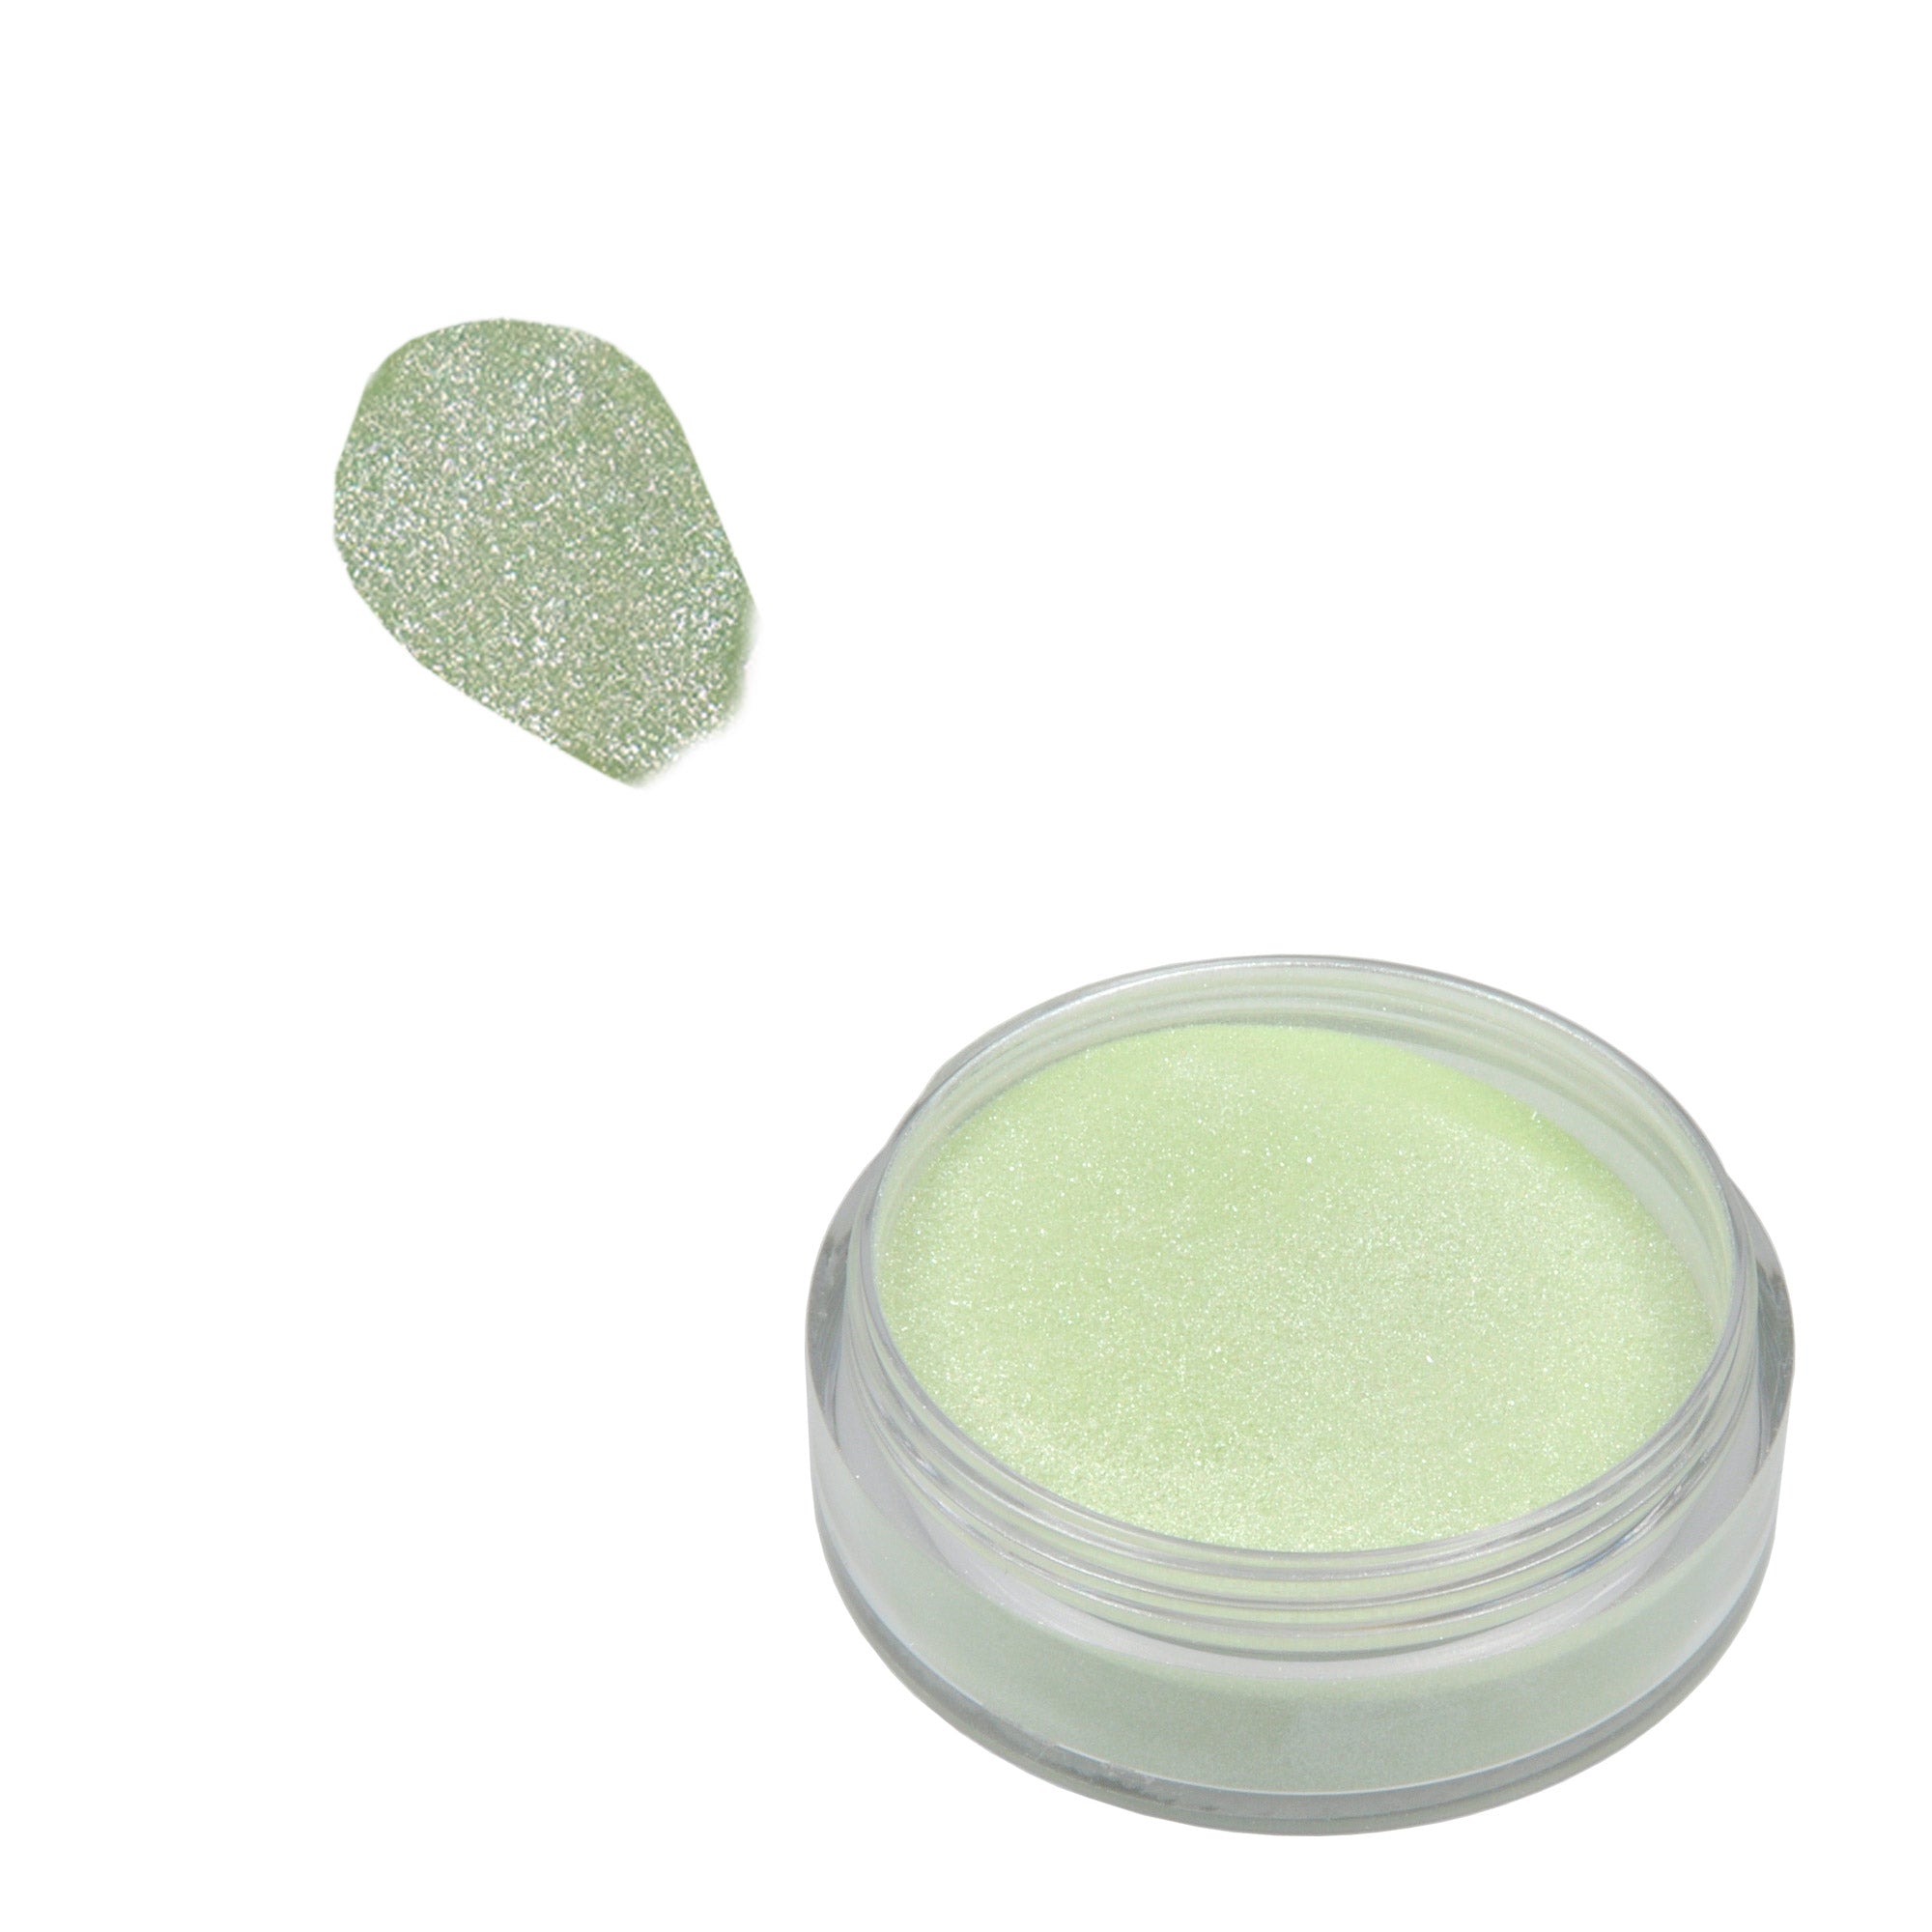 Acrylic Powder 10 g. - Sparkling Green